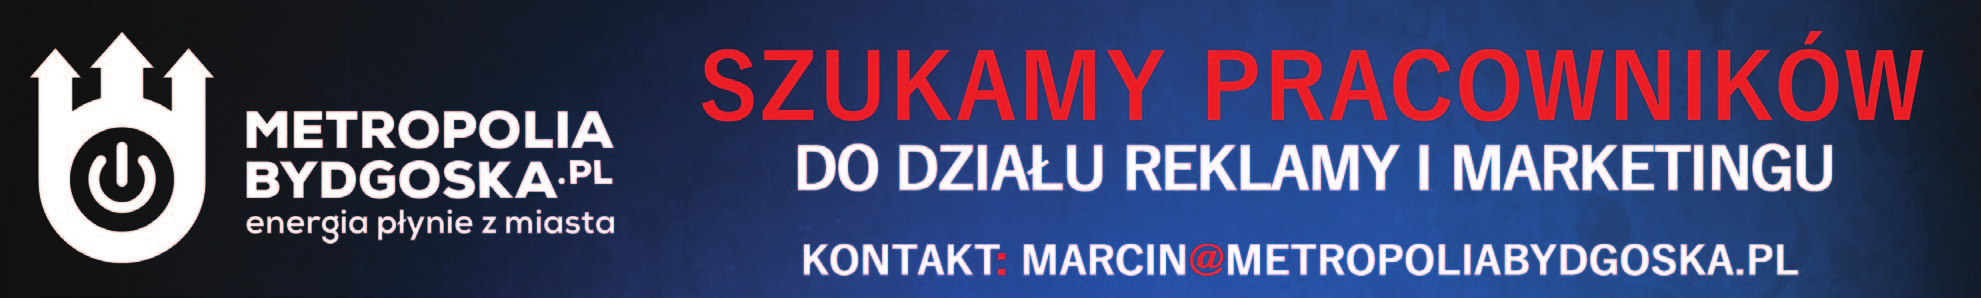 14 sylwetki Stanisław Gazda s.gazda@metropoliabydgoska.pl Dzisiaj markety epatują świętami niekiedy na dwa miesiące przed ich nadejściem.